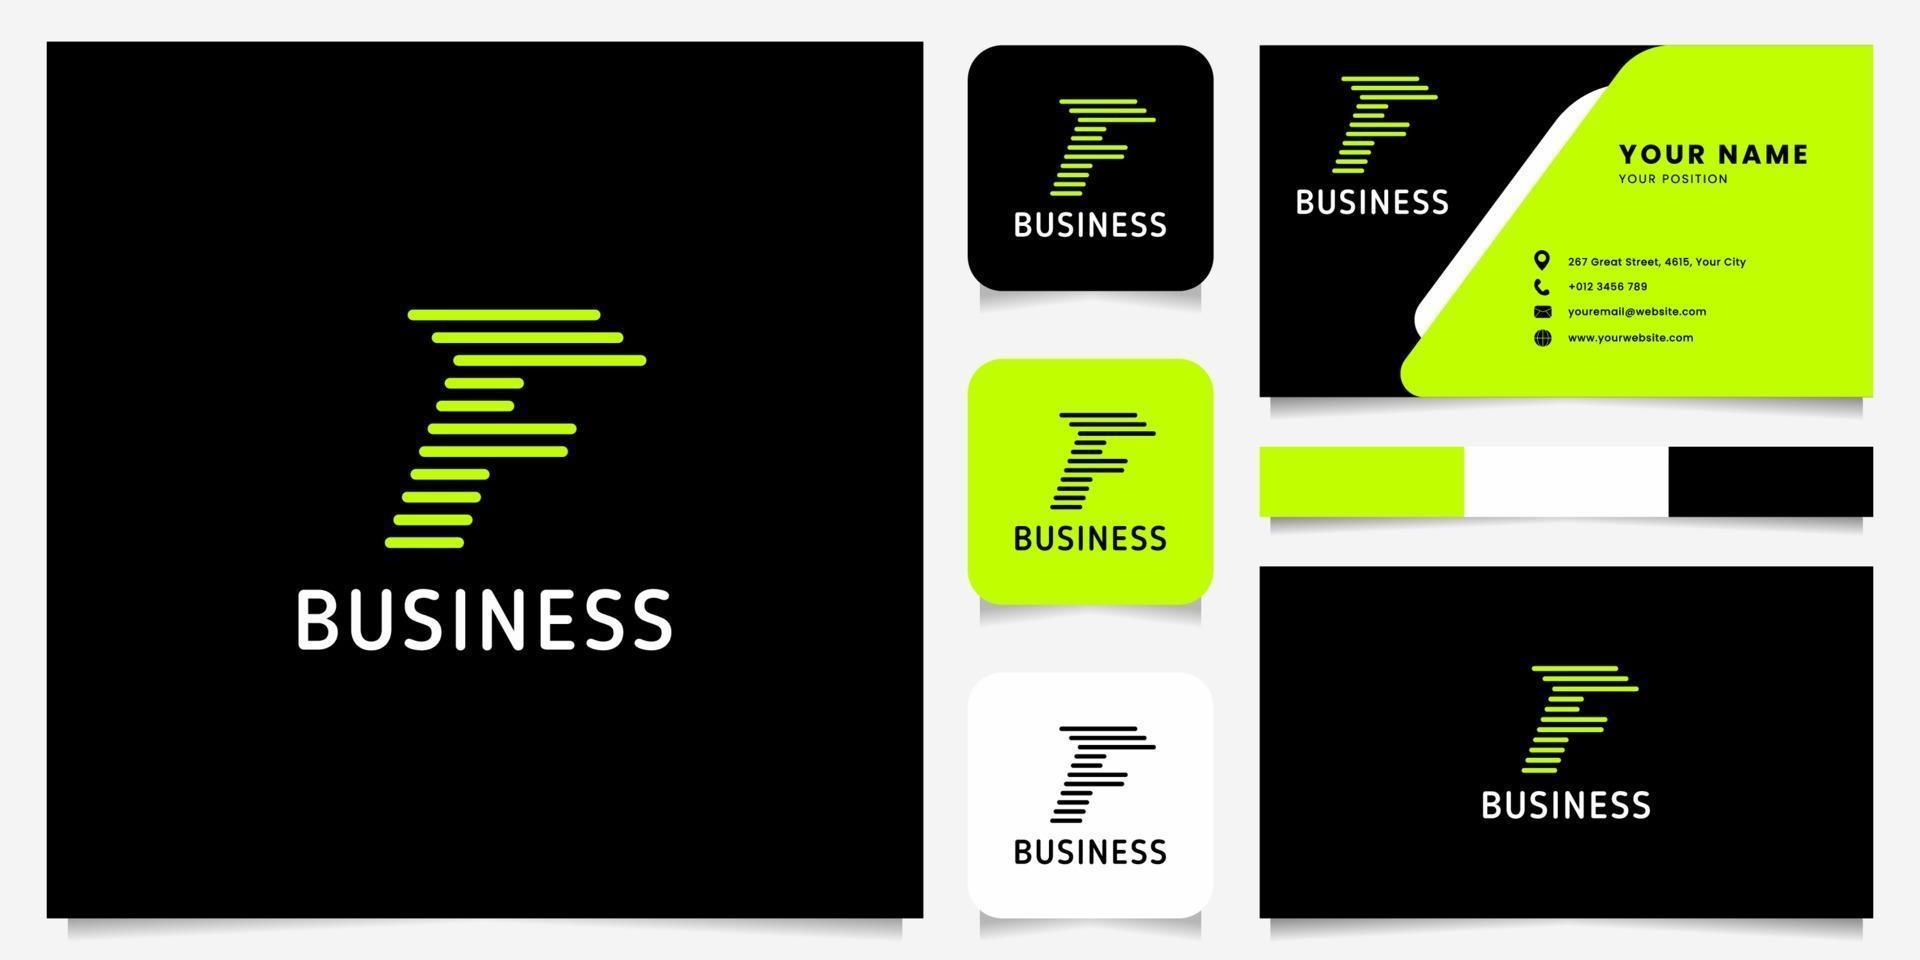 heldergroene pijl afgeronde lijnen letter f-logo op zwarte achtergrond met sjabloon voor visitekaartjes vector